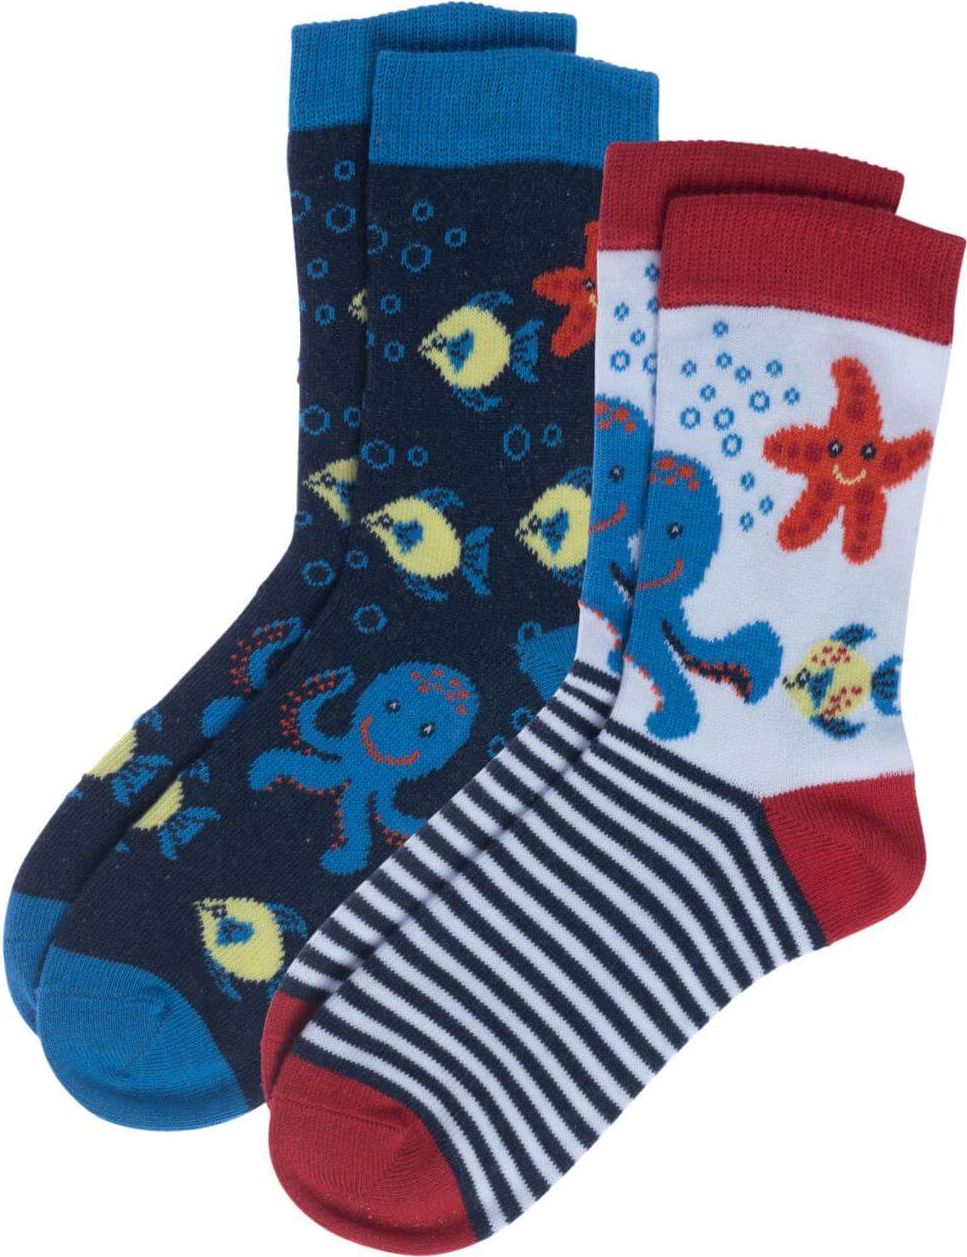 Kinder-Socken BEAR im 2er-Pack ocean life